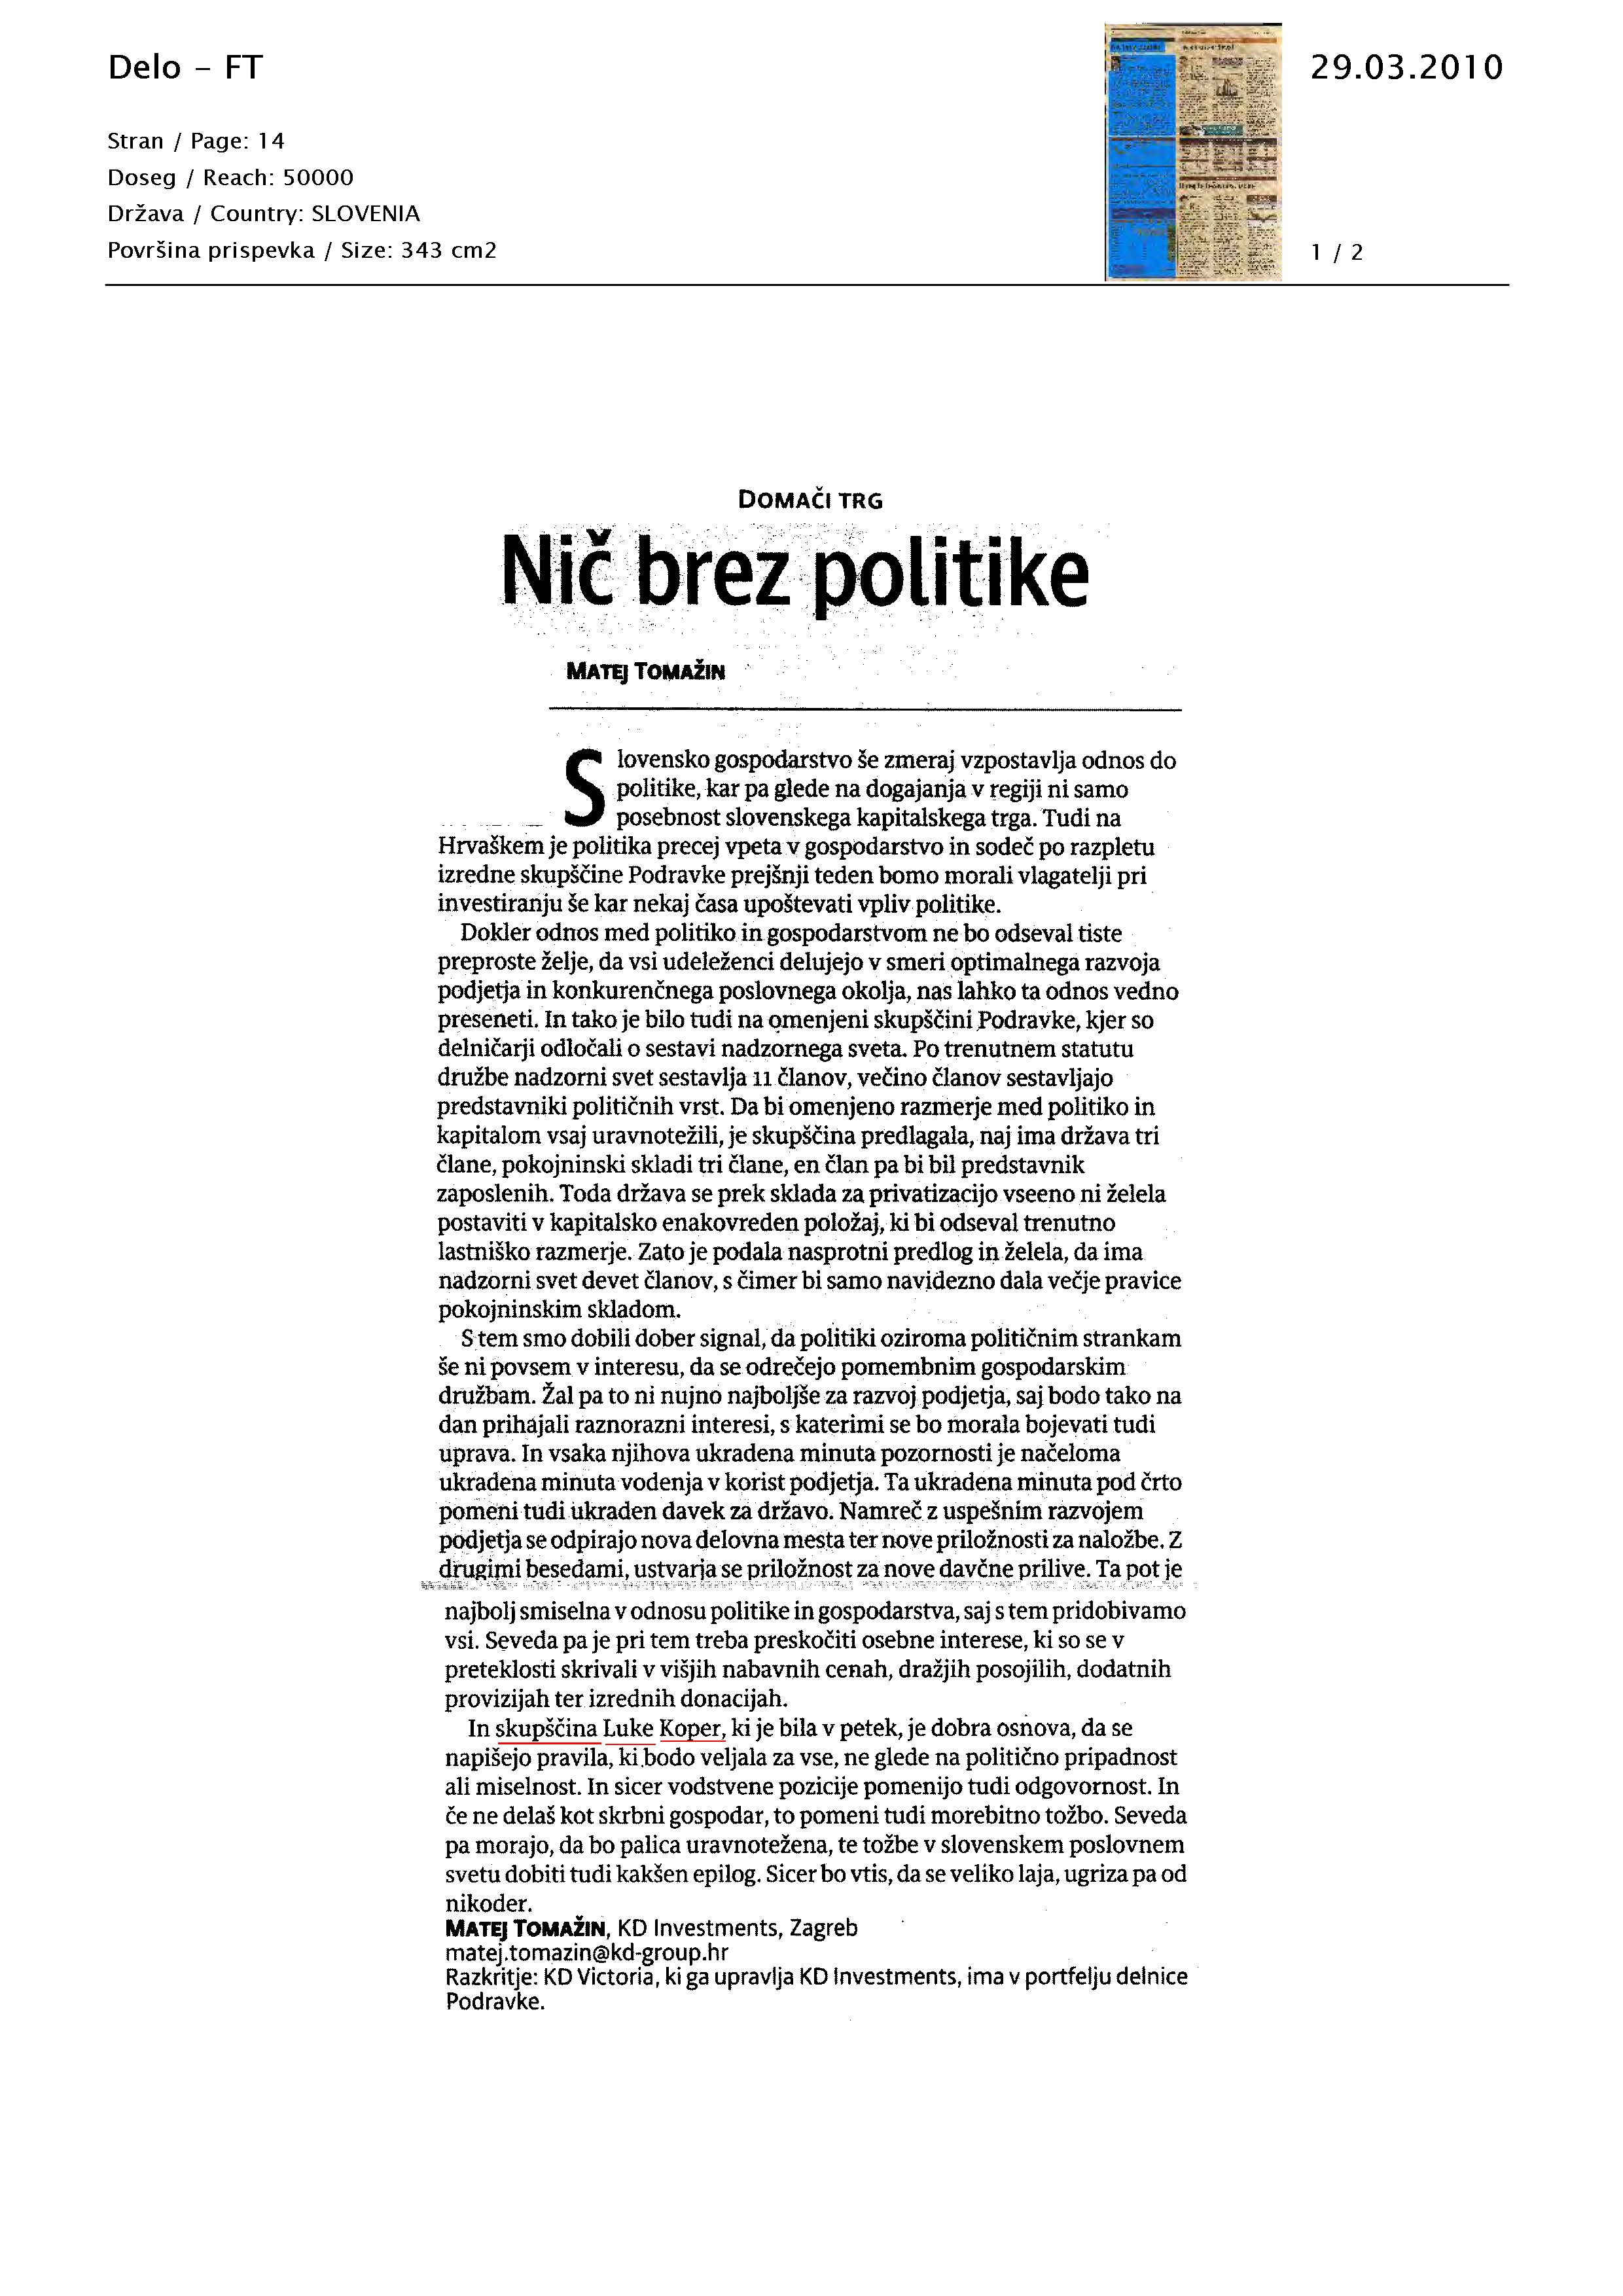 Ni_brez_politike_Page_1